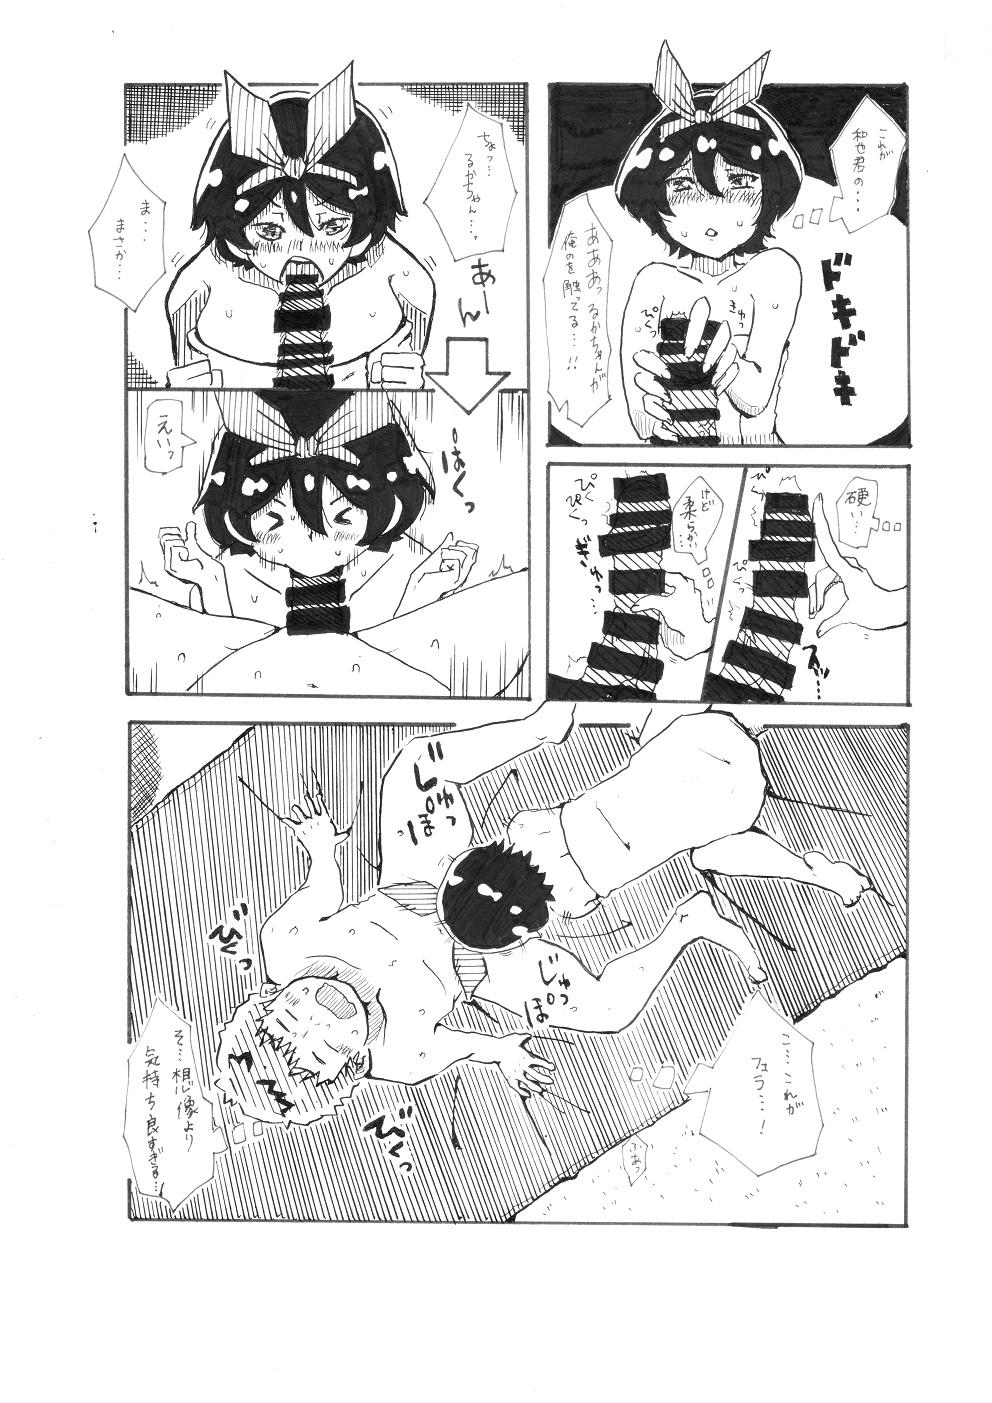 [Pixiv] ユッキーさん | yuckey nekoinu (86798363) [るかちゃんとエッチするだけの漫画] | Rent A Girlfriend 5